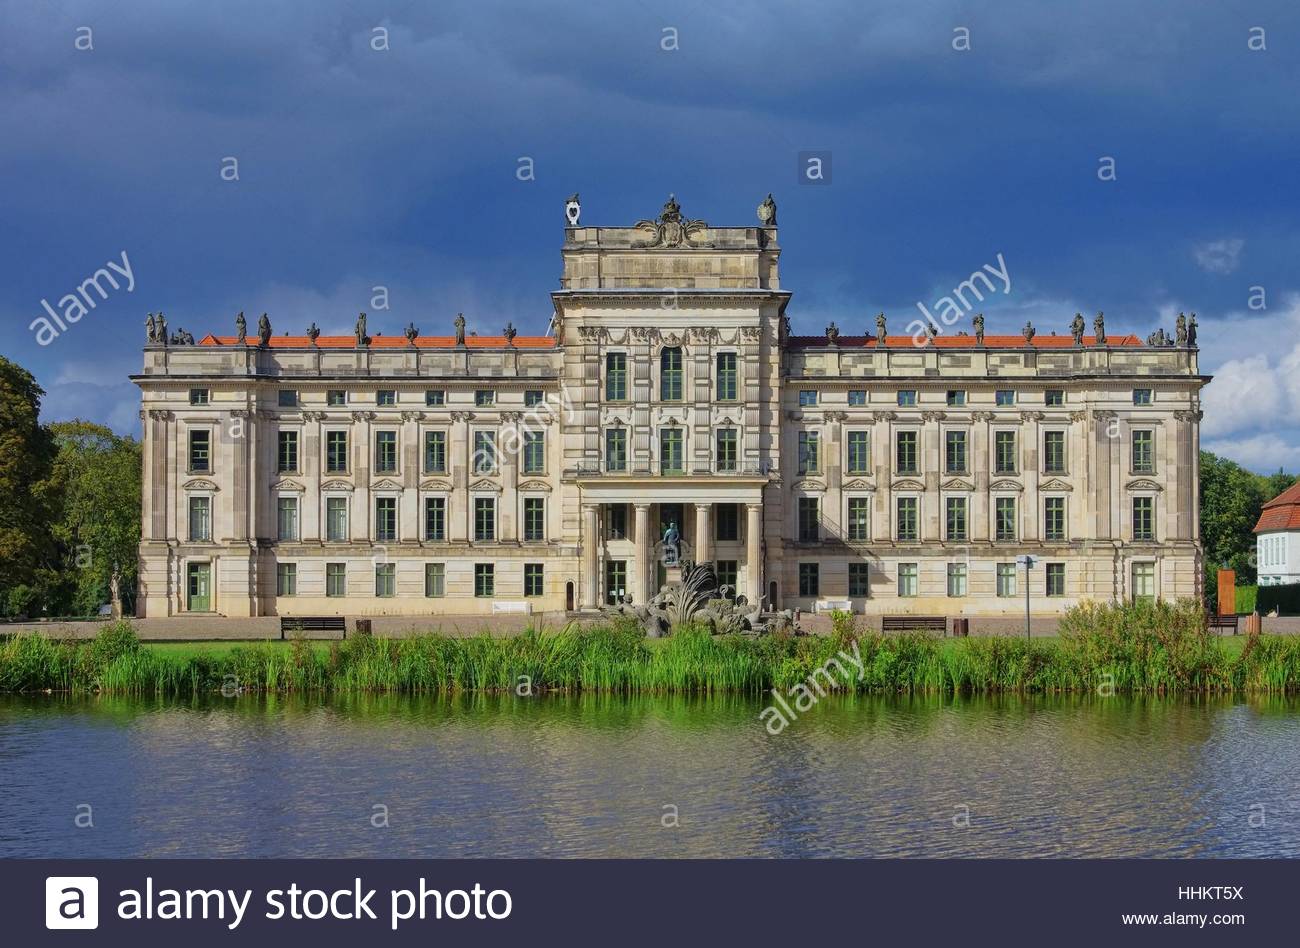 Ludwigslust Palace #3